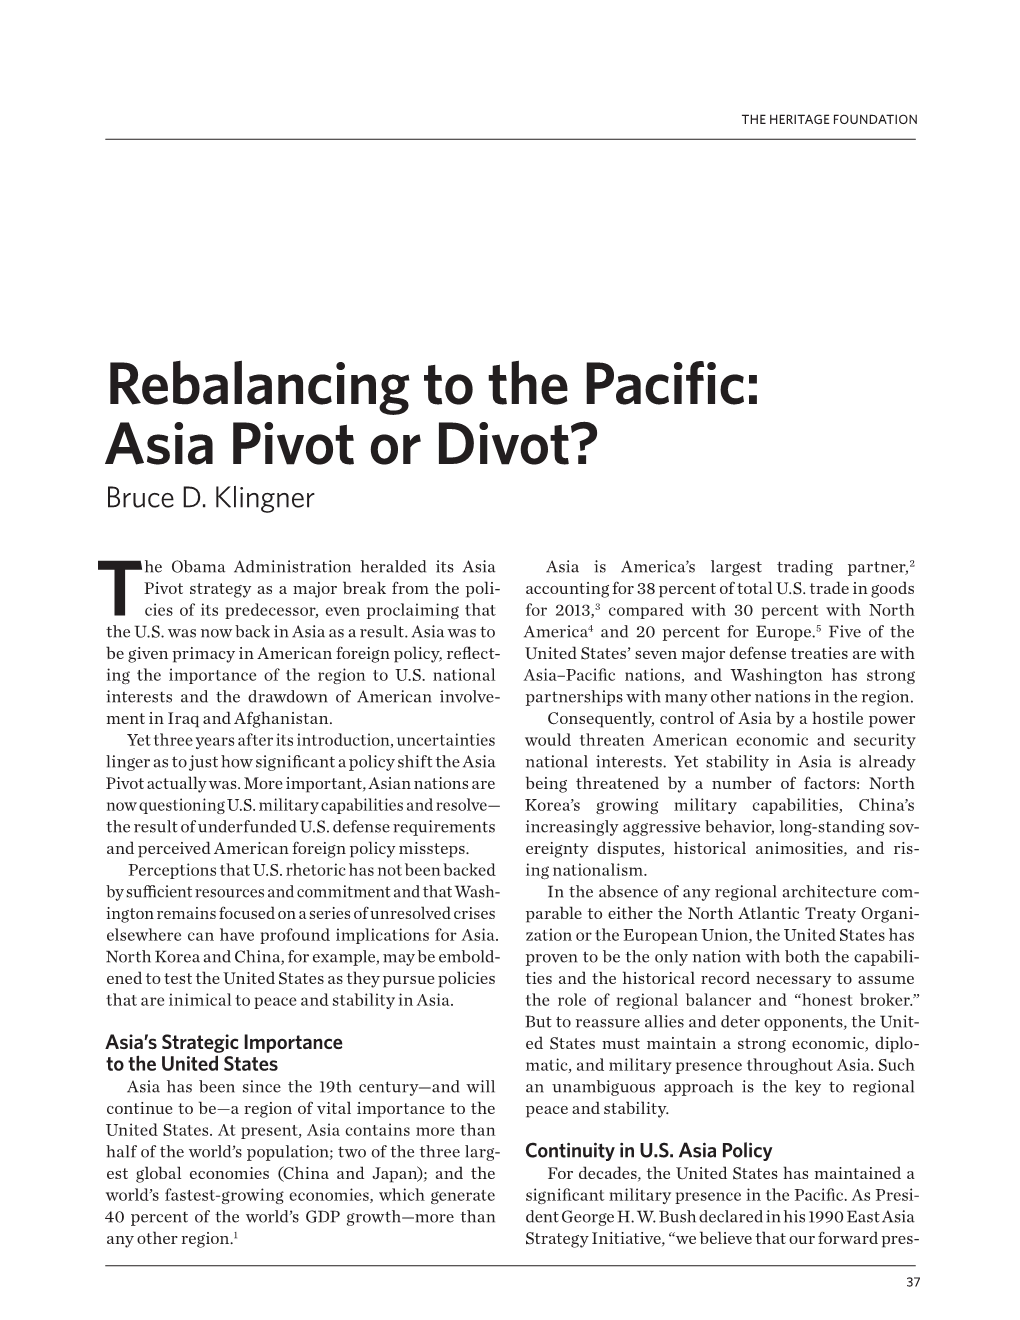 Asia Pivot Or Divot? Bruce D